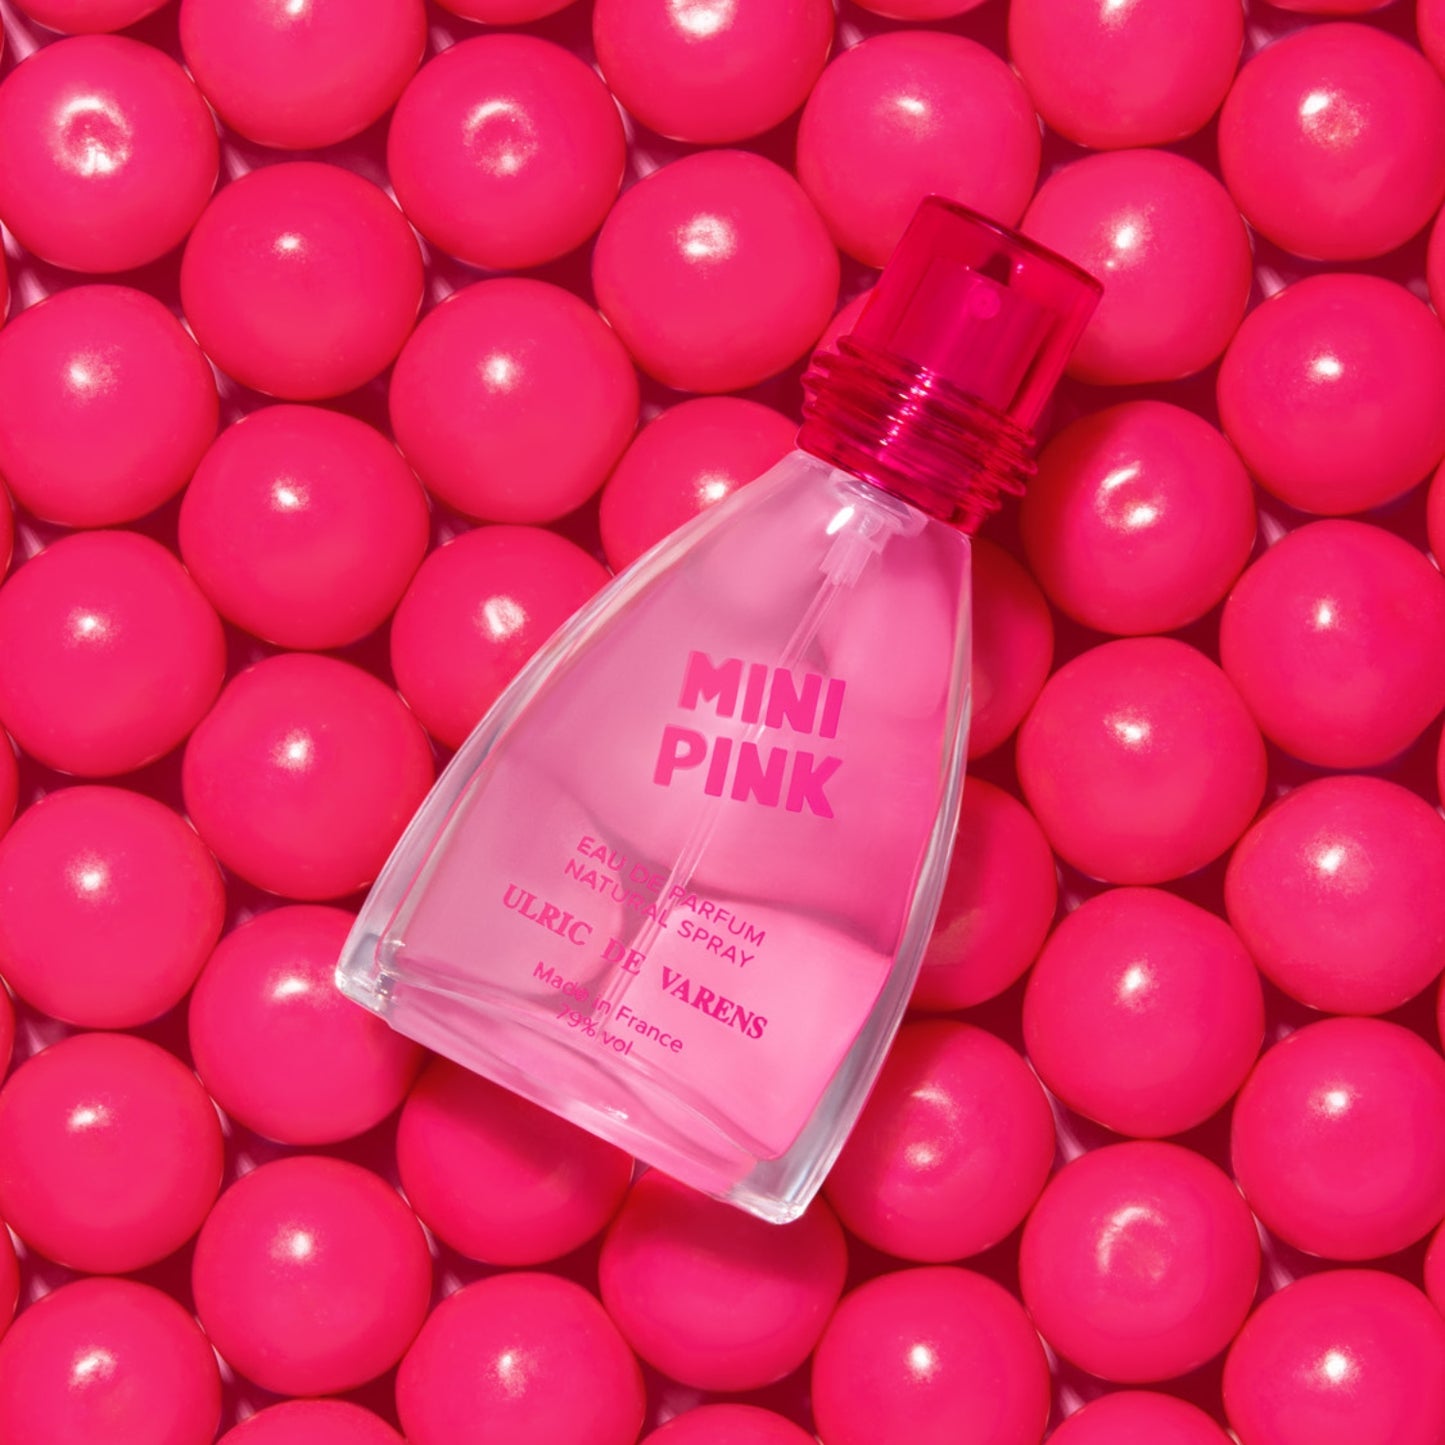 Mini Pink